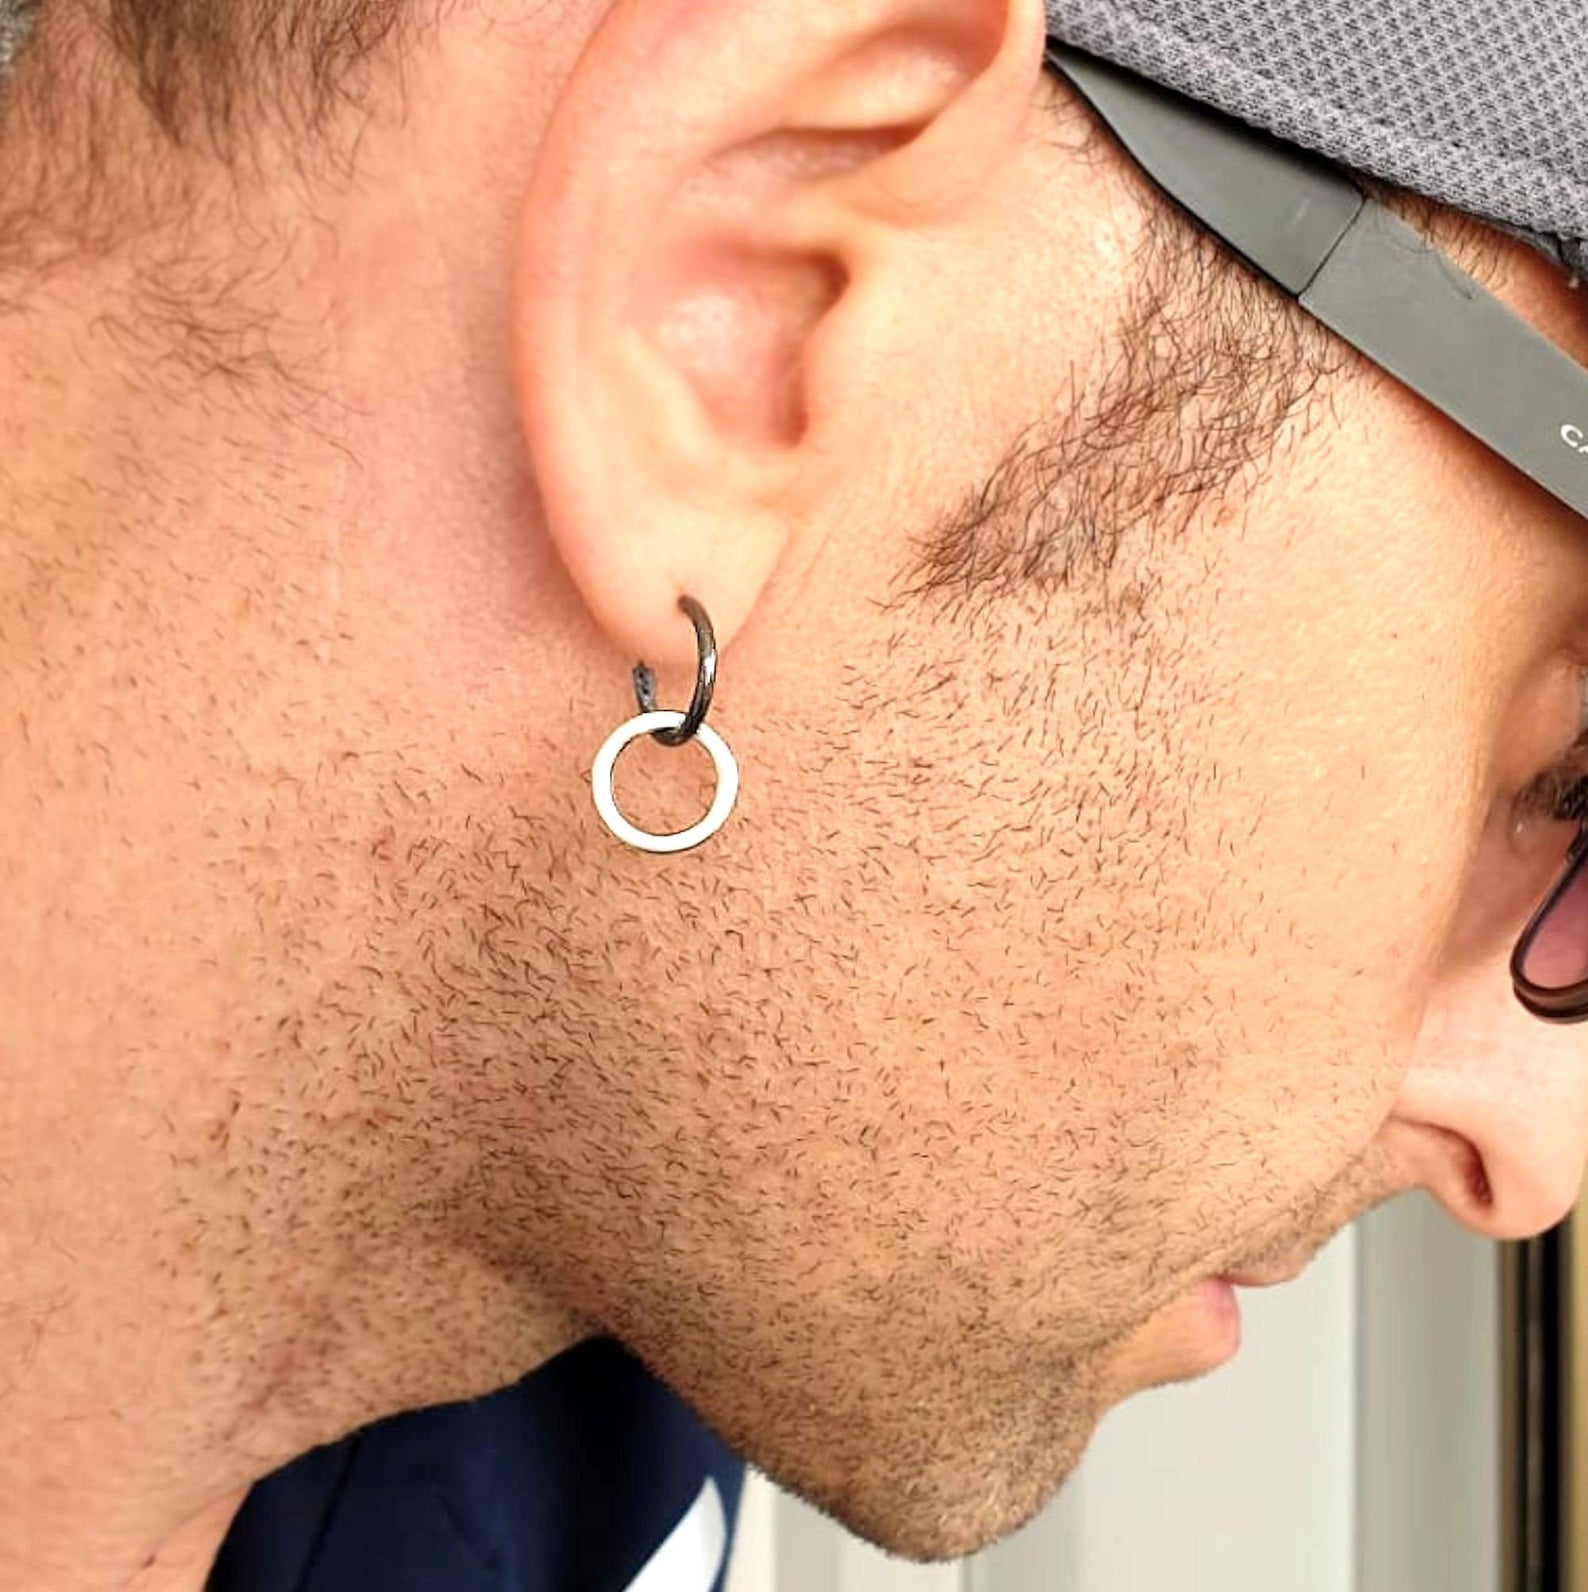 Gauge Earring Charred Comet Halo Gauge Earring Gauge - Etsy Canada | Gauged  earrings, Mens earrings hoop, Etsy earrings